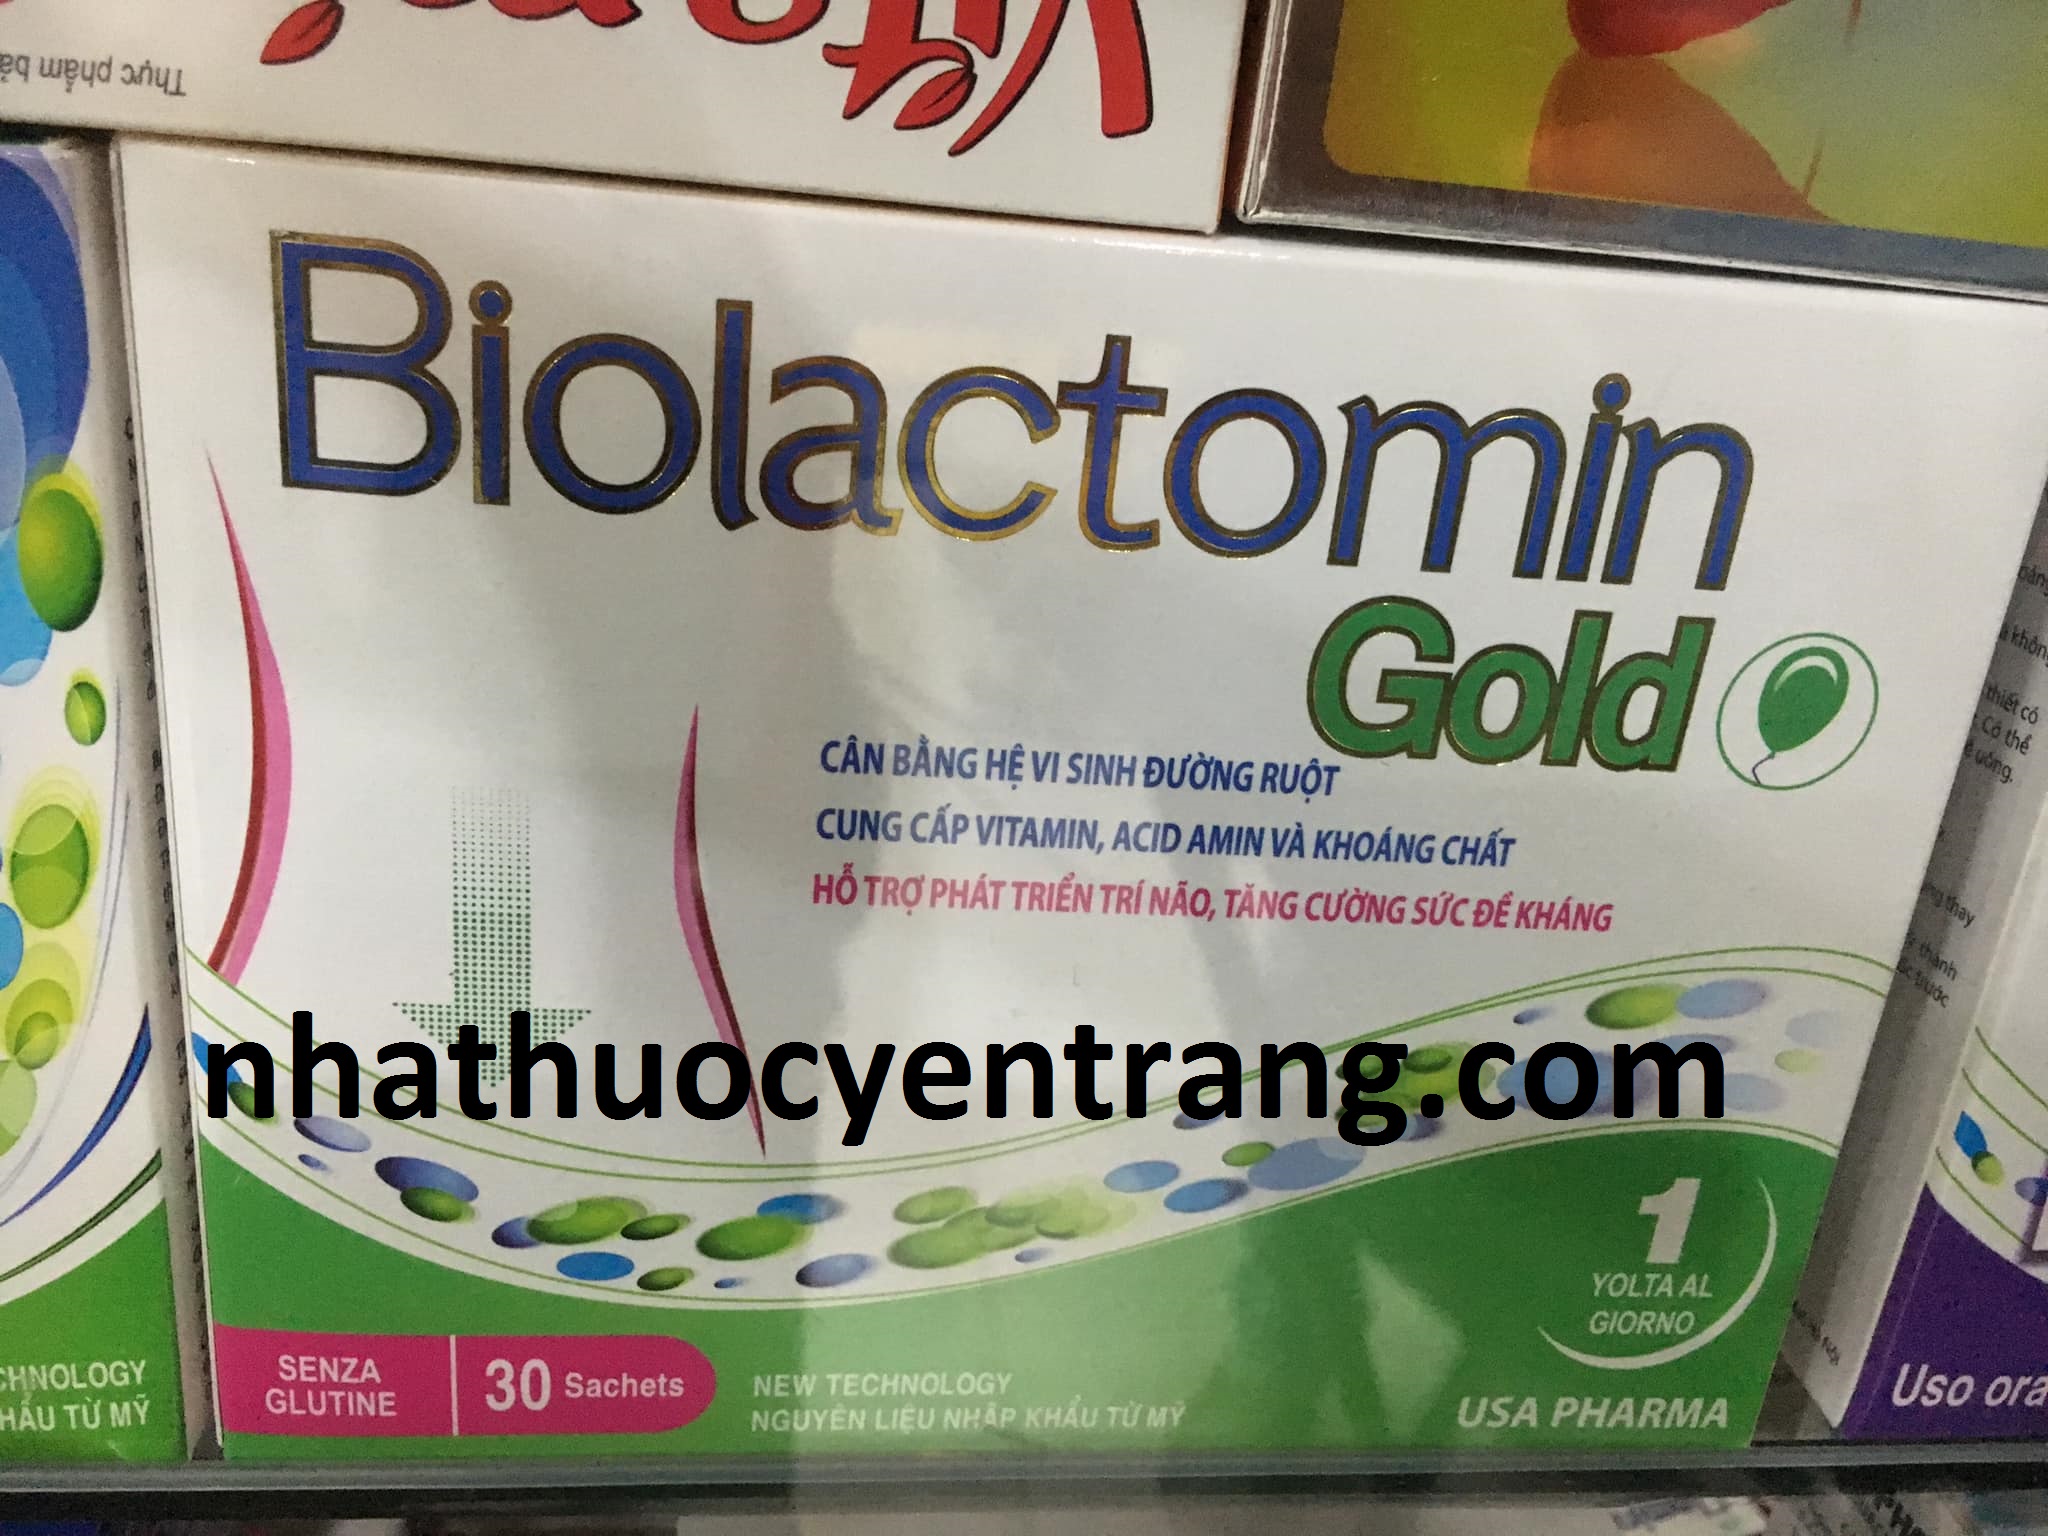 Biolactomin Gold xanh